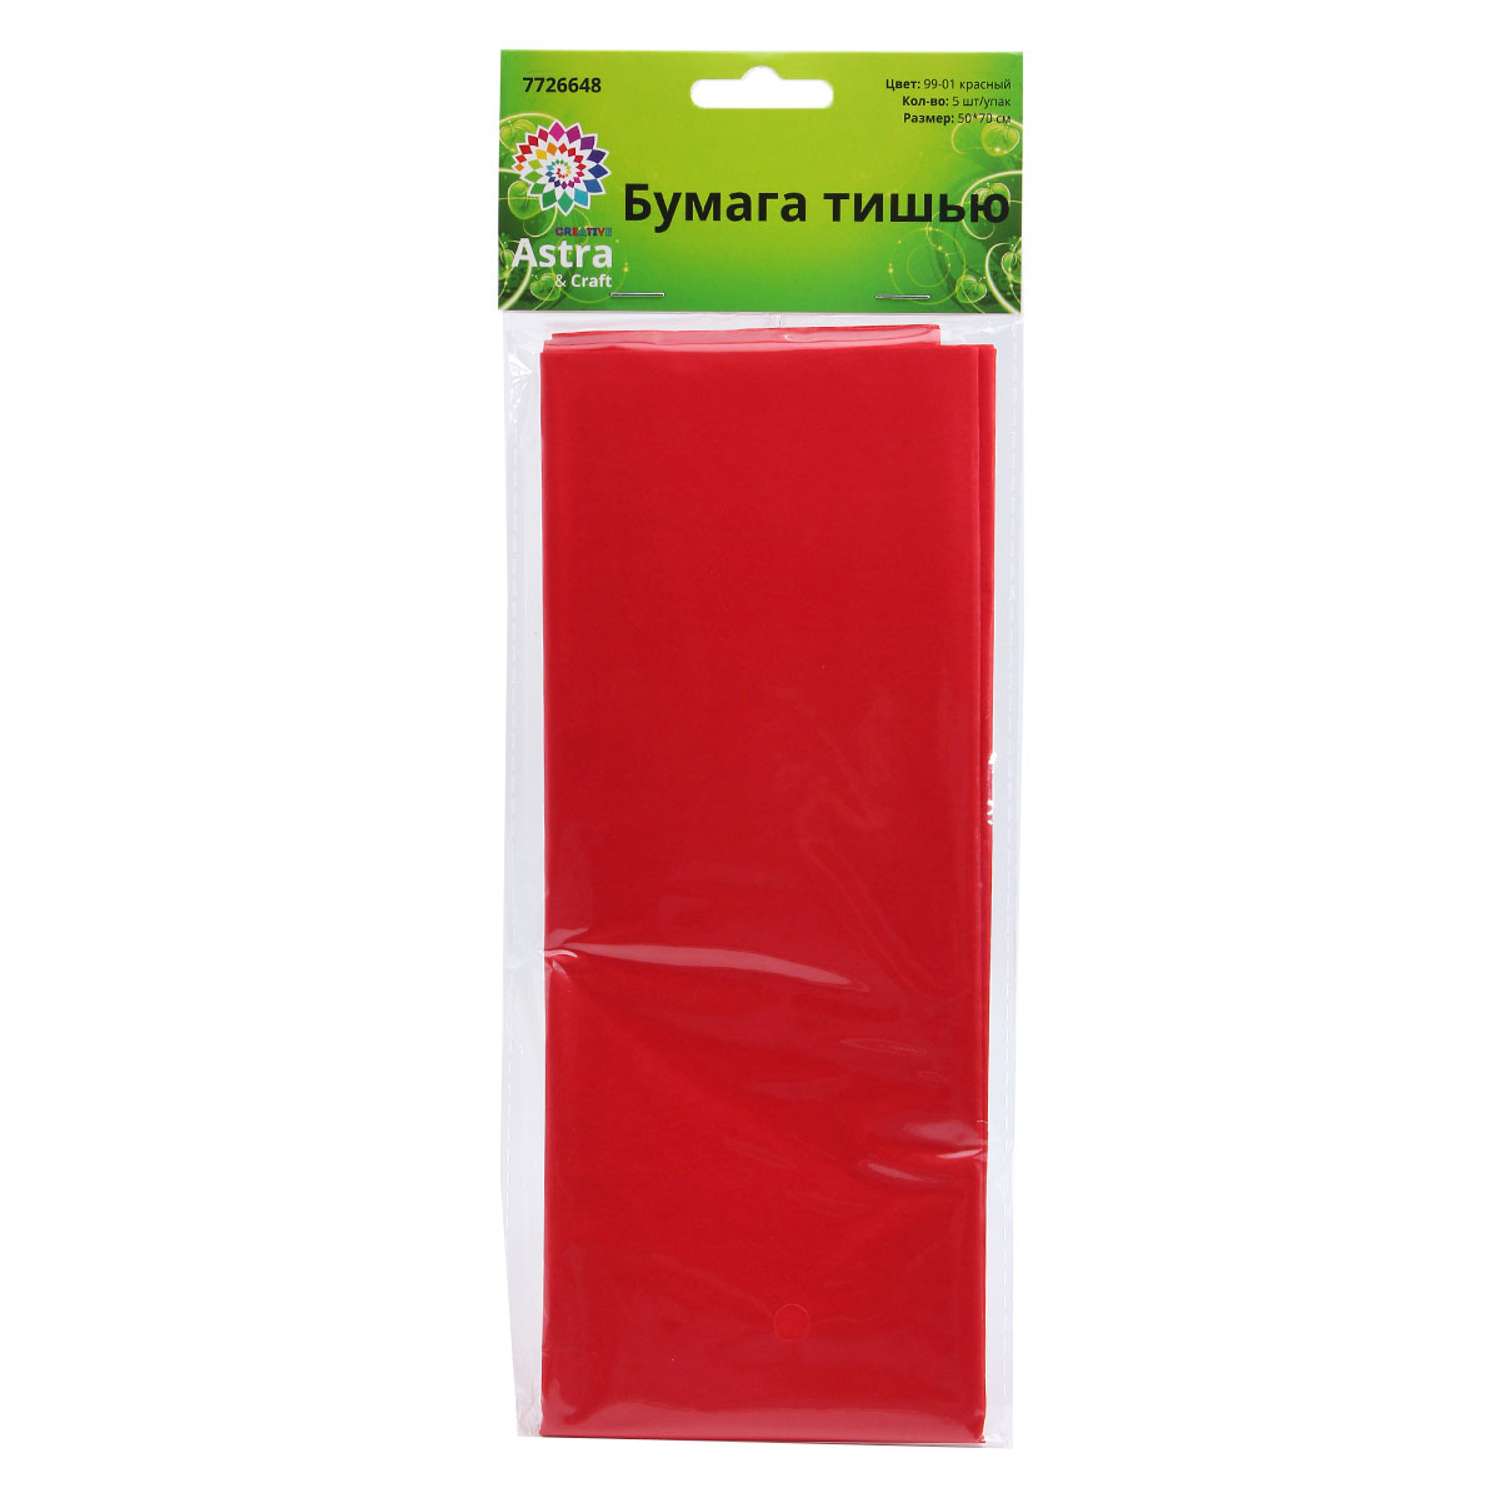 Бумага Astra Craft тишью тонкая для упаковки подарков цветов и творчества 50х70см 5 шт 99-01 красный - фото 4